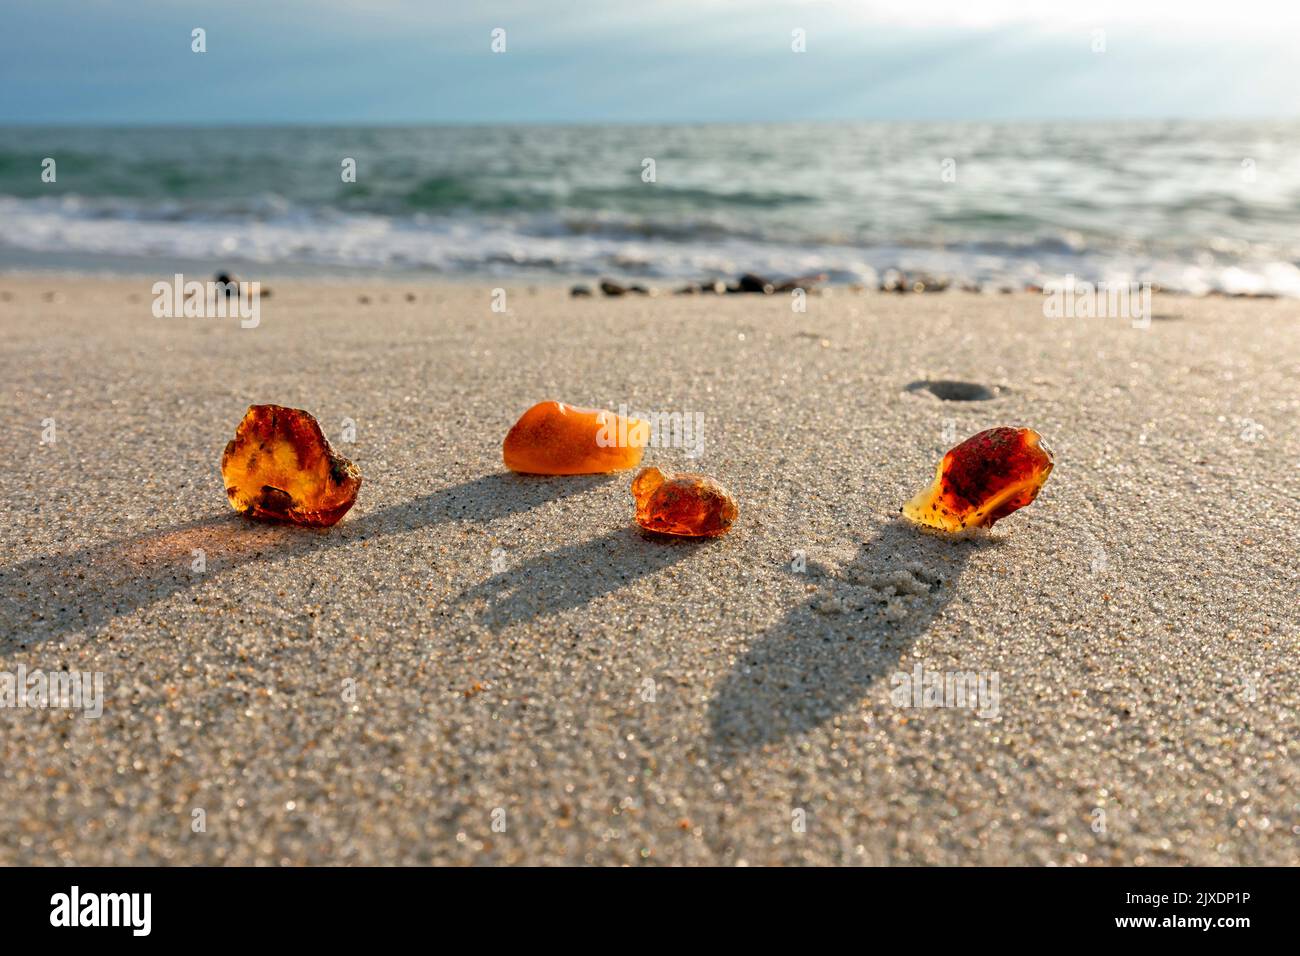 Amber on a sandy beach. Denmark Stock Photo